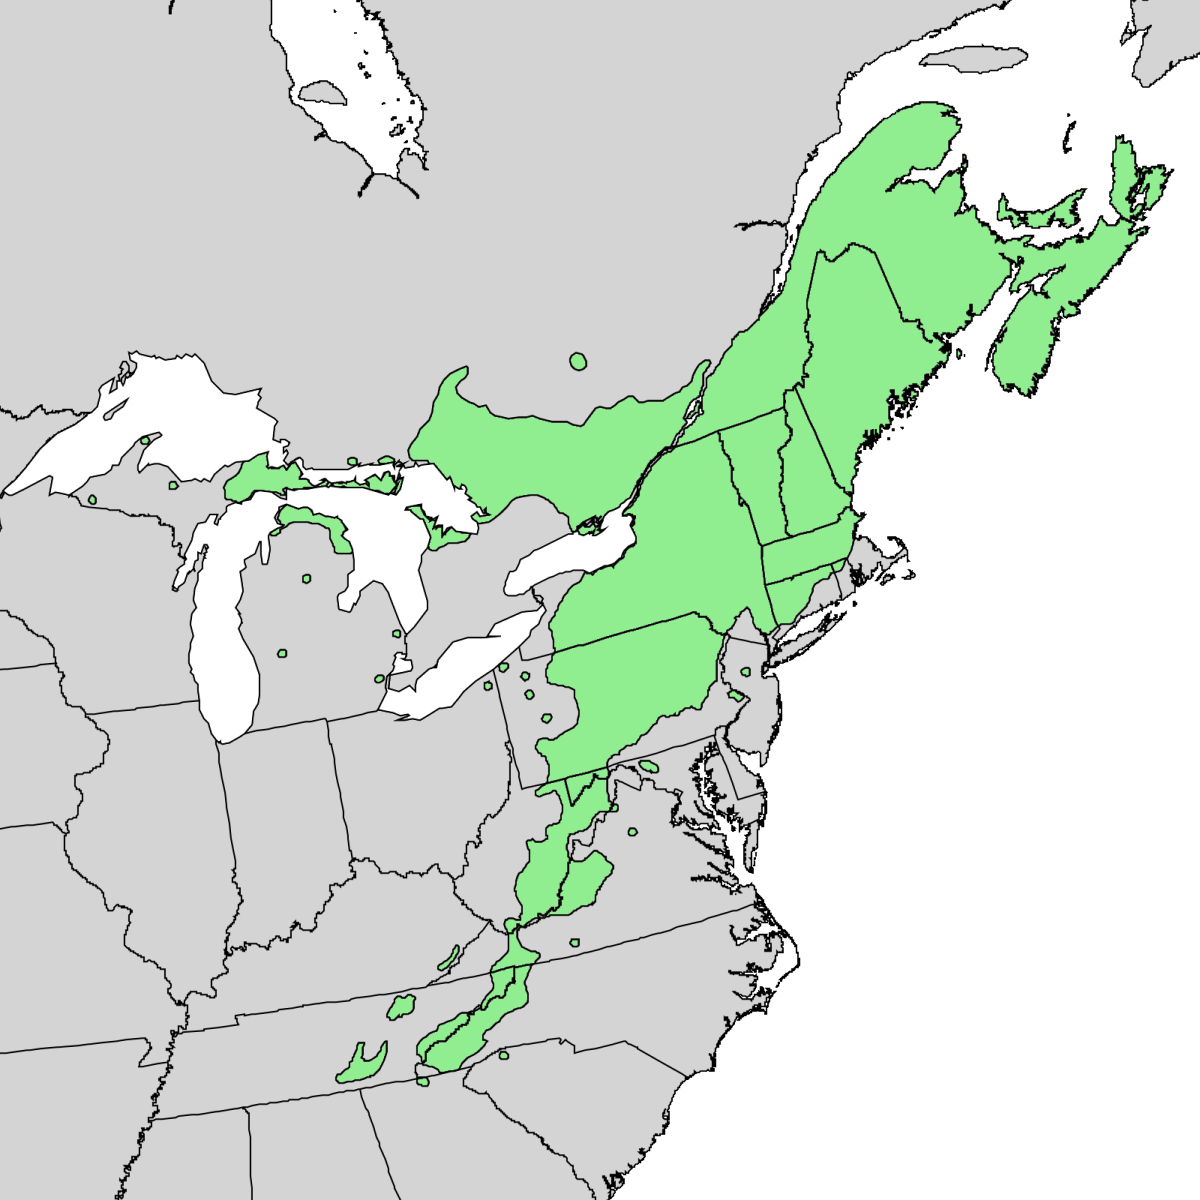 Striped Maple Growing Range By Elbert L. Little, Jr, USGS [Public domain], via Wikimedia Commons